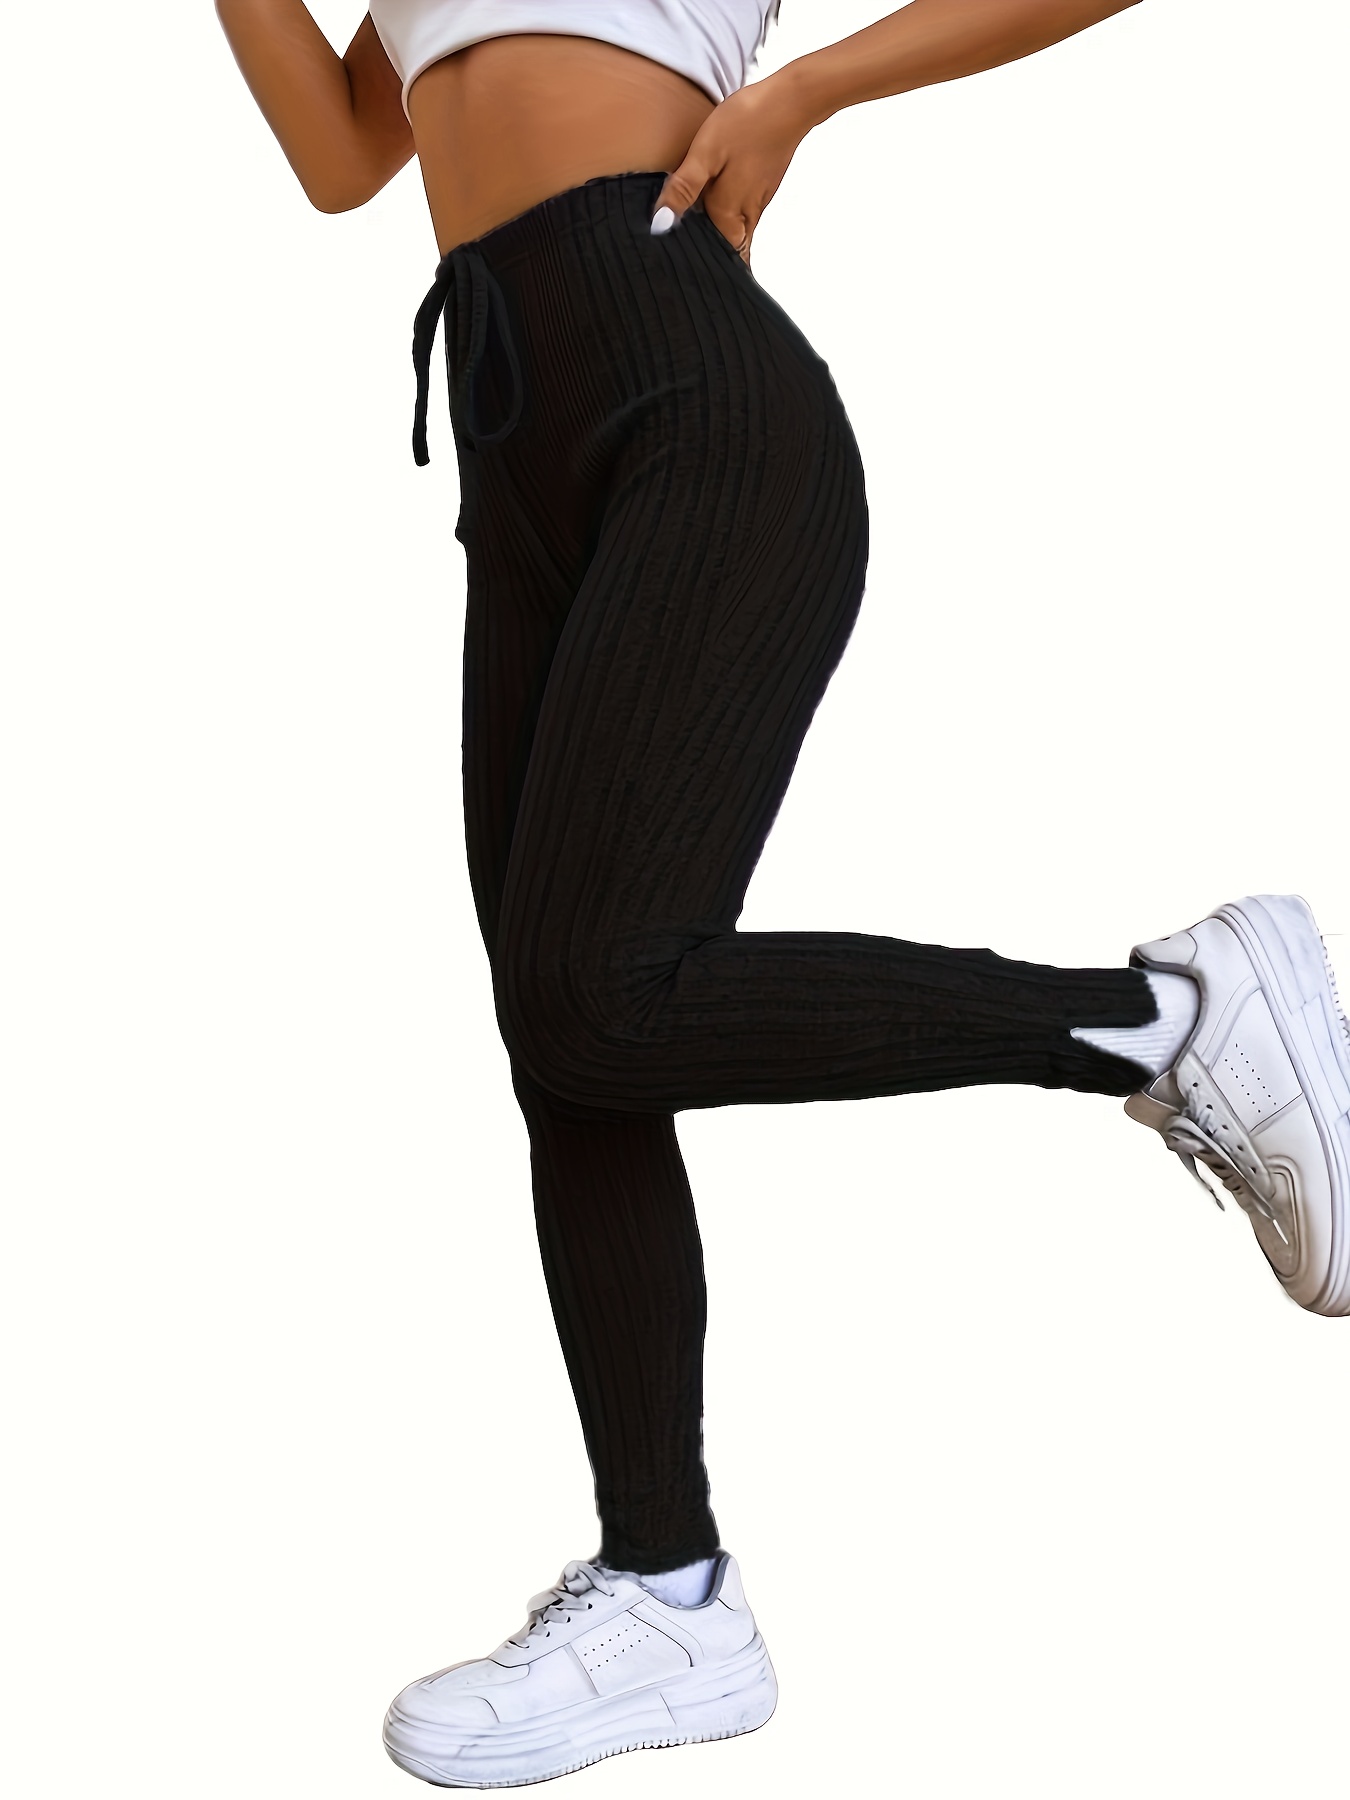 Pantalon leggins mallas en tejido de canale, ajustadas y elasticas